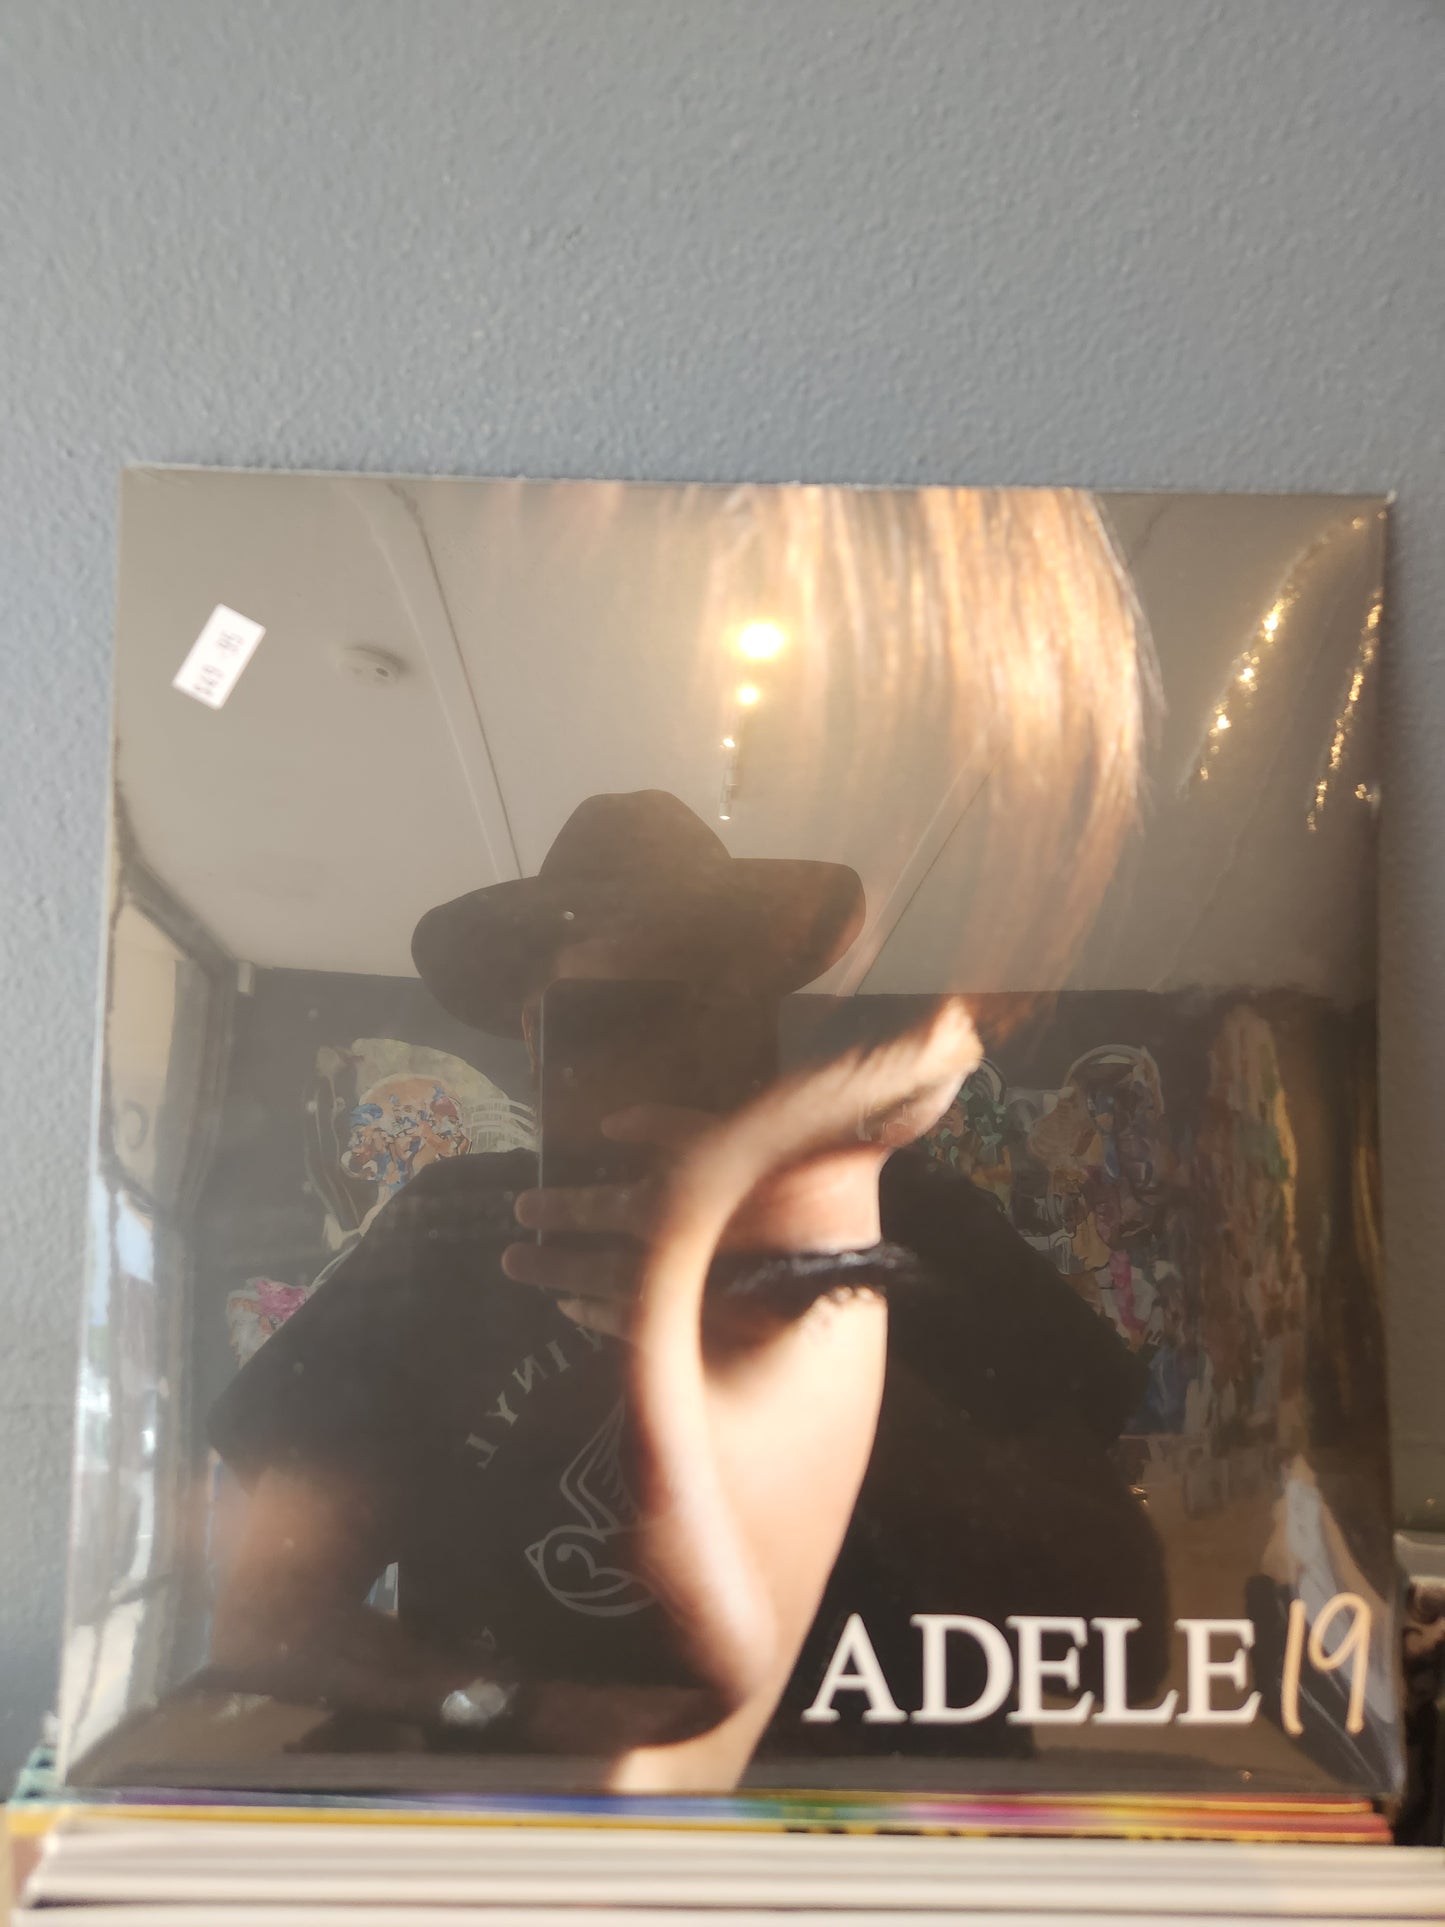 Adele - 19 - Vinyl LP